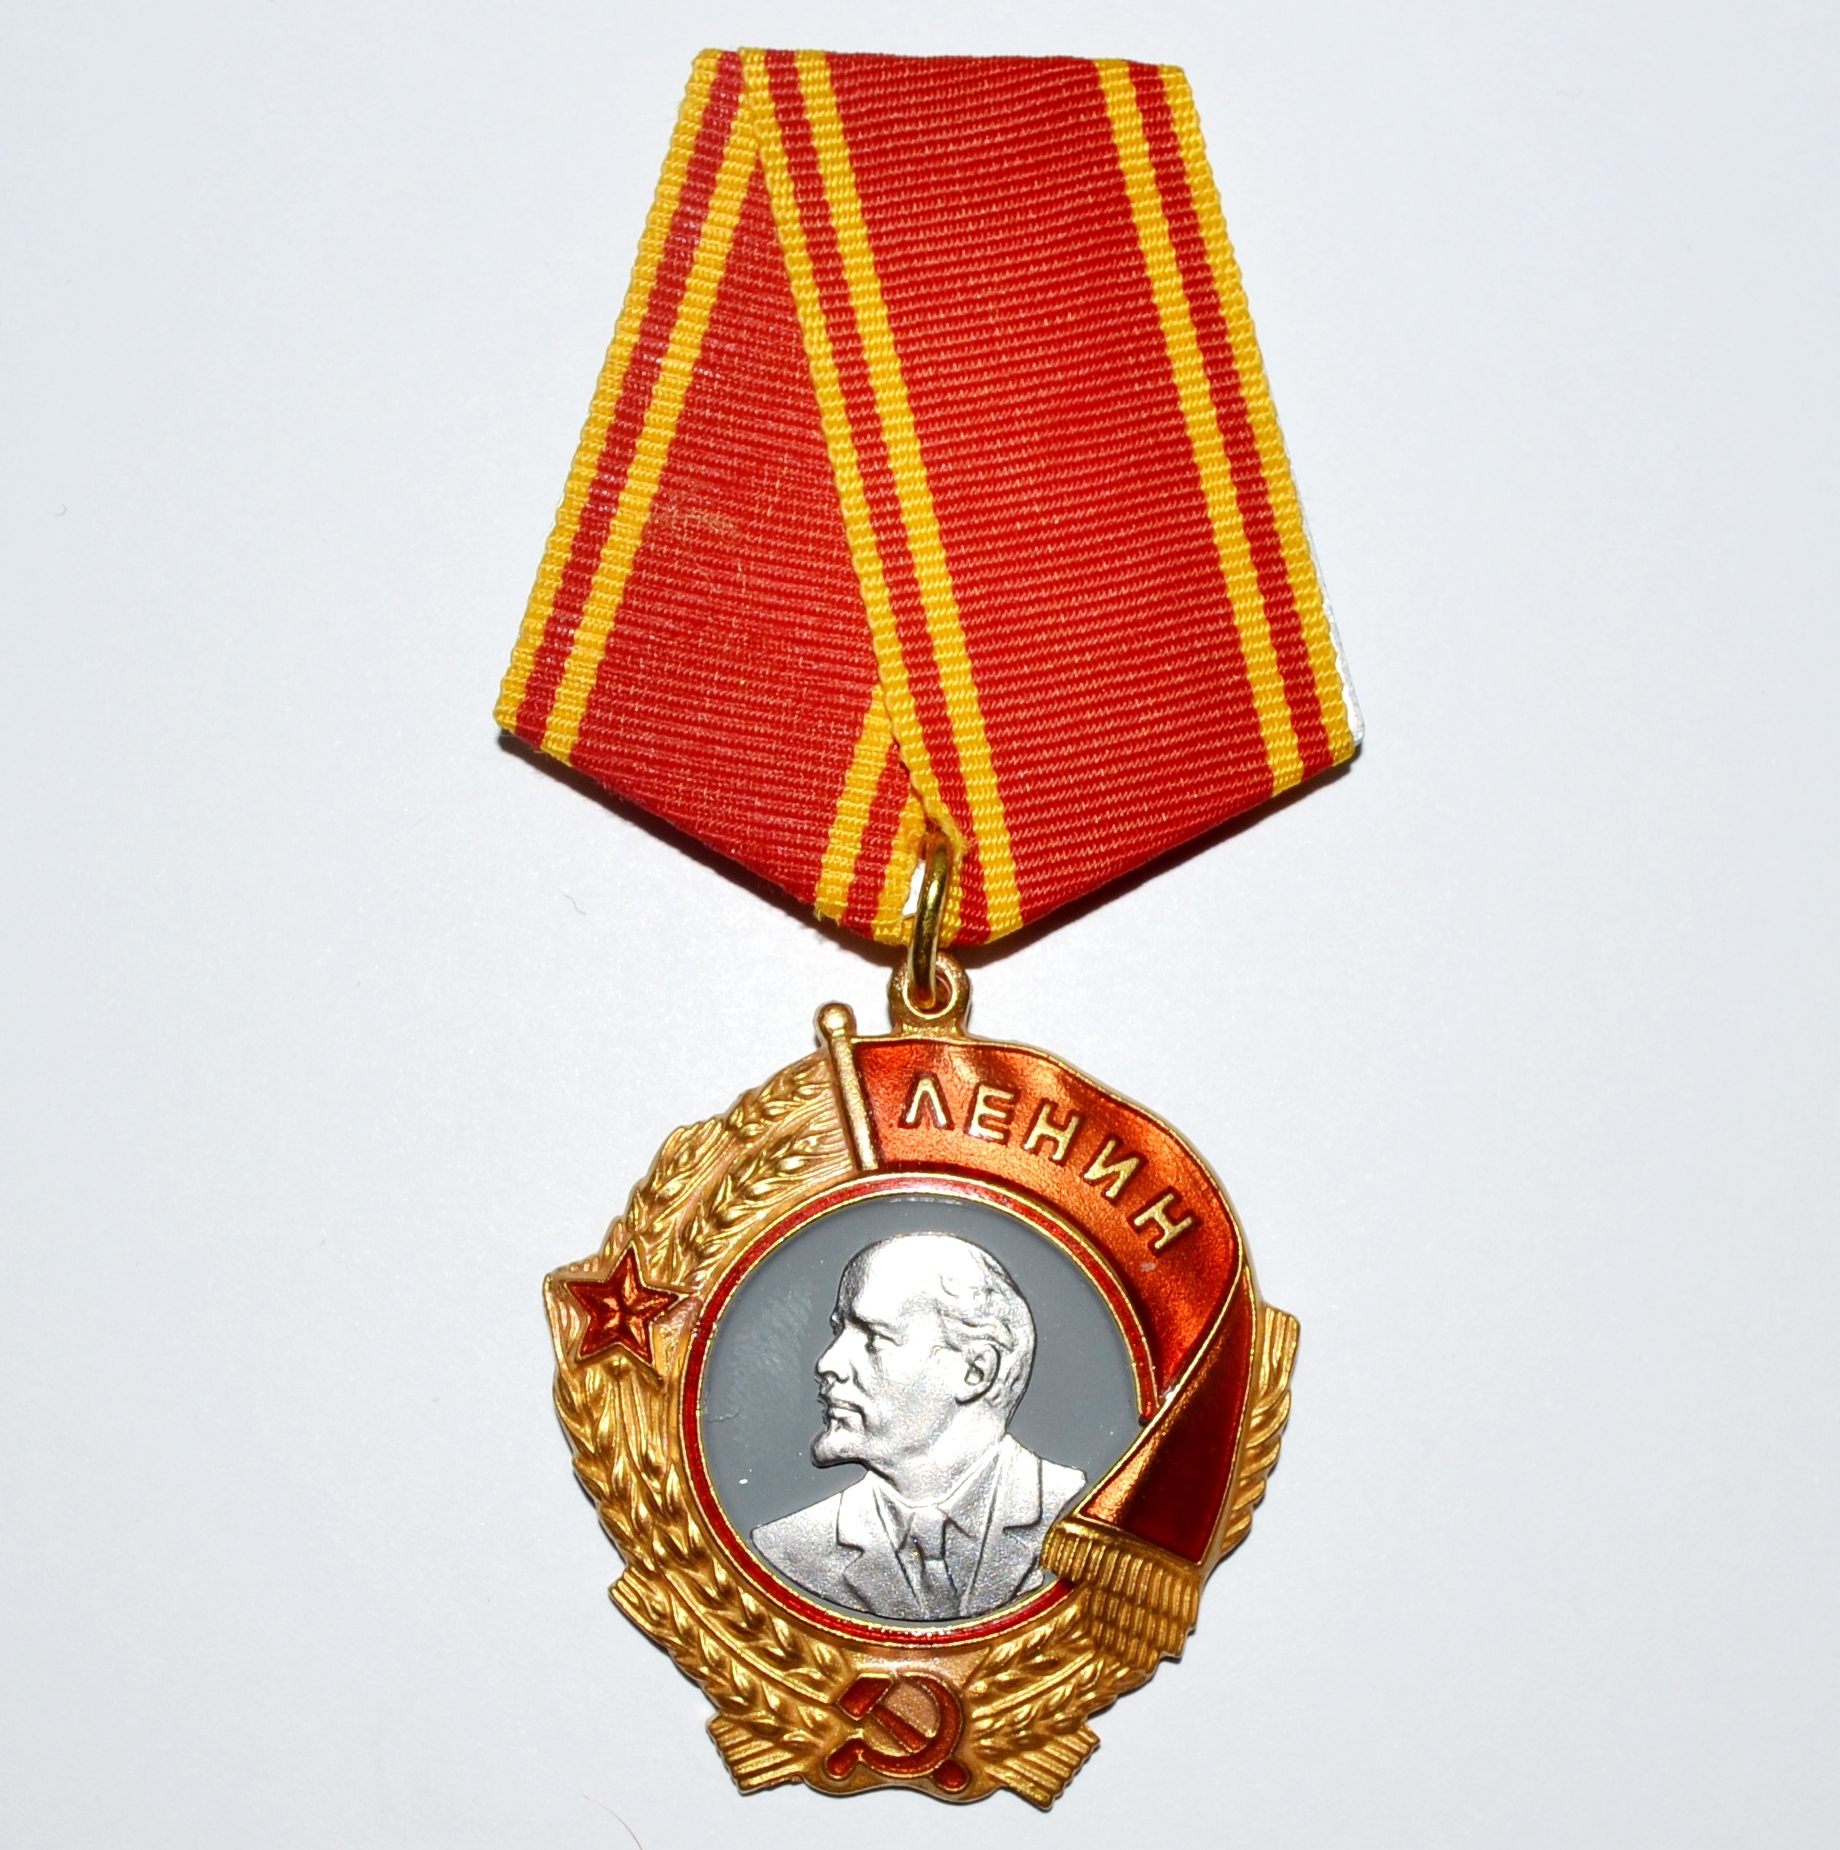 Награда 4 дня. Орден Ленина 1943. Орден Ленина 1942 года. Награда орден Ленина. Орден Ленина 1943 года.